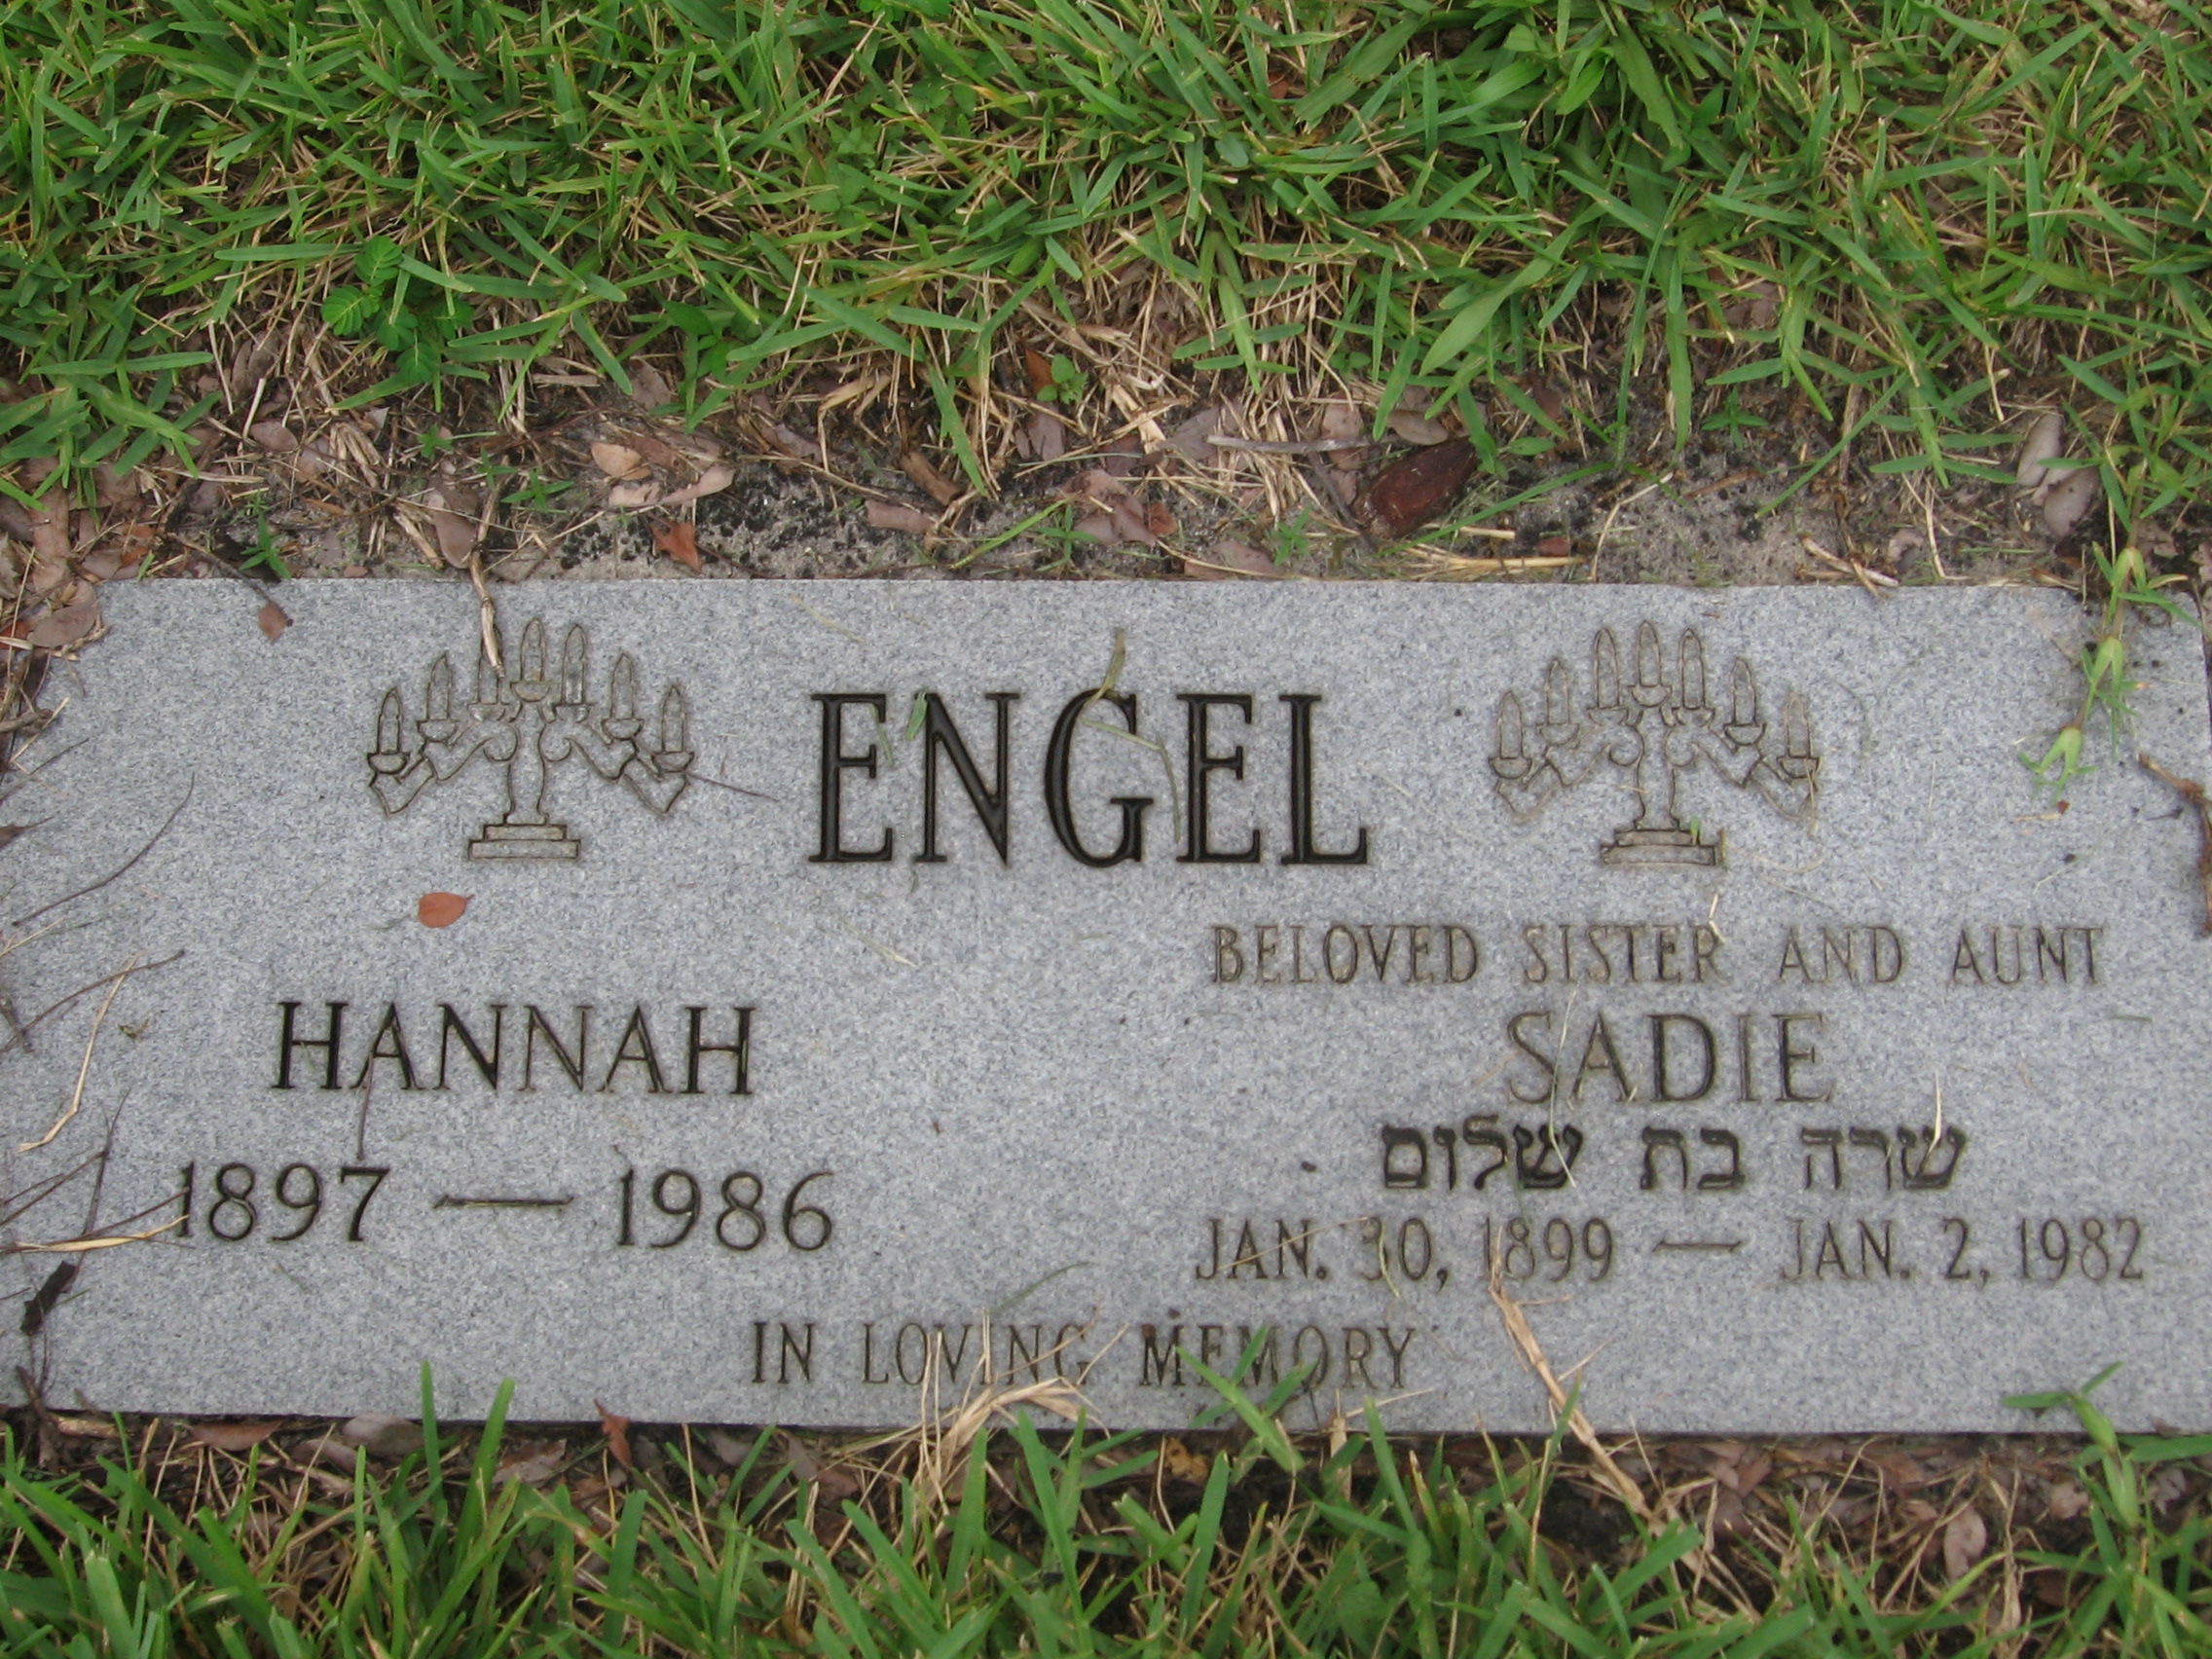 Sadie Engel